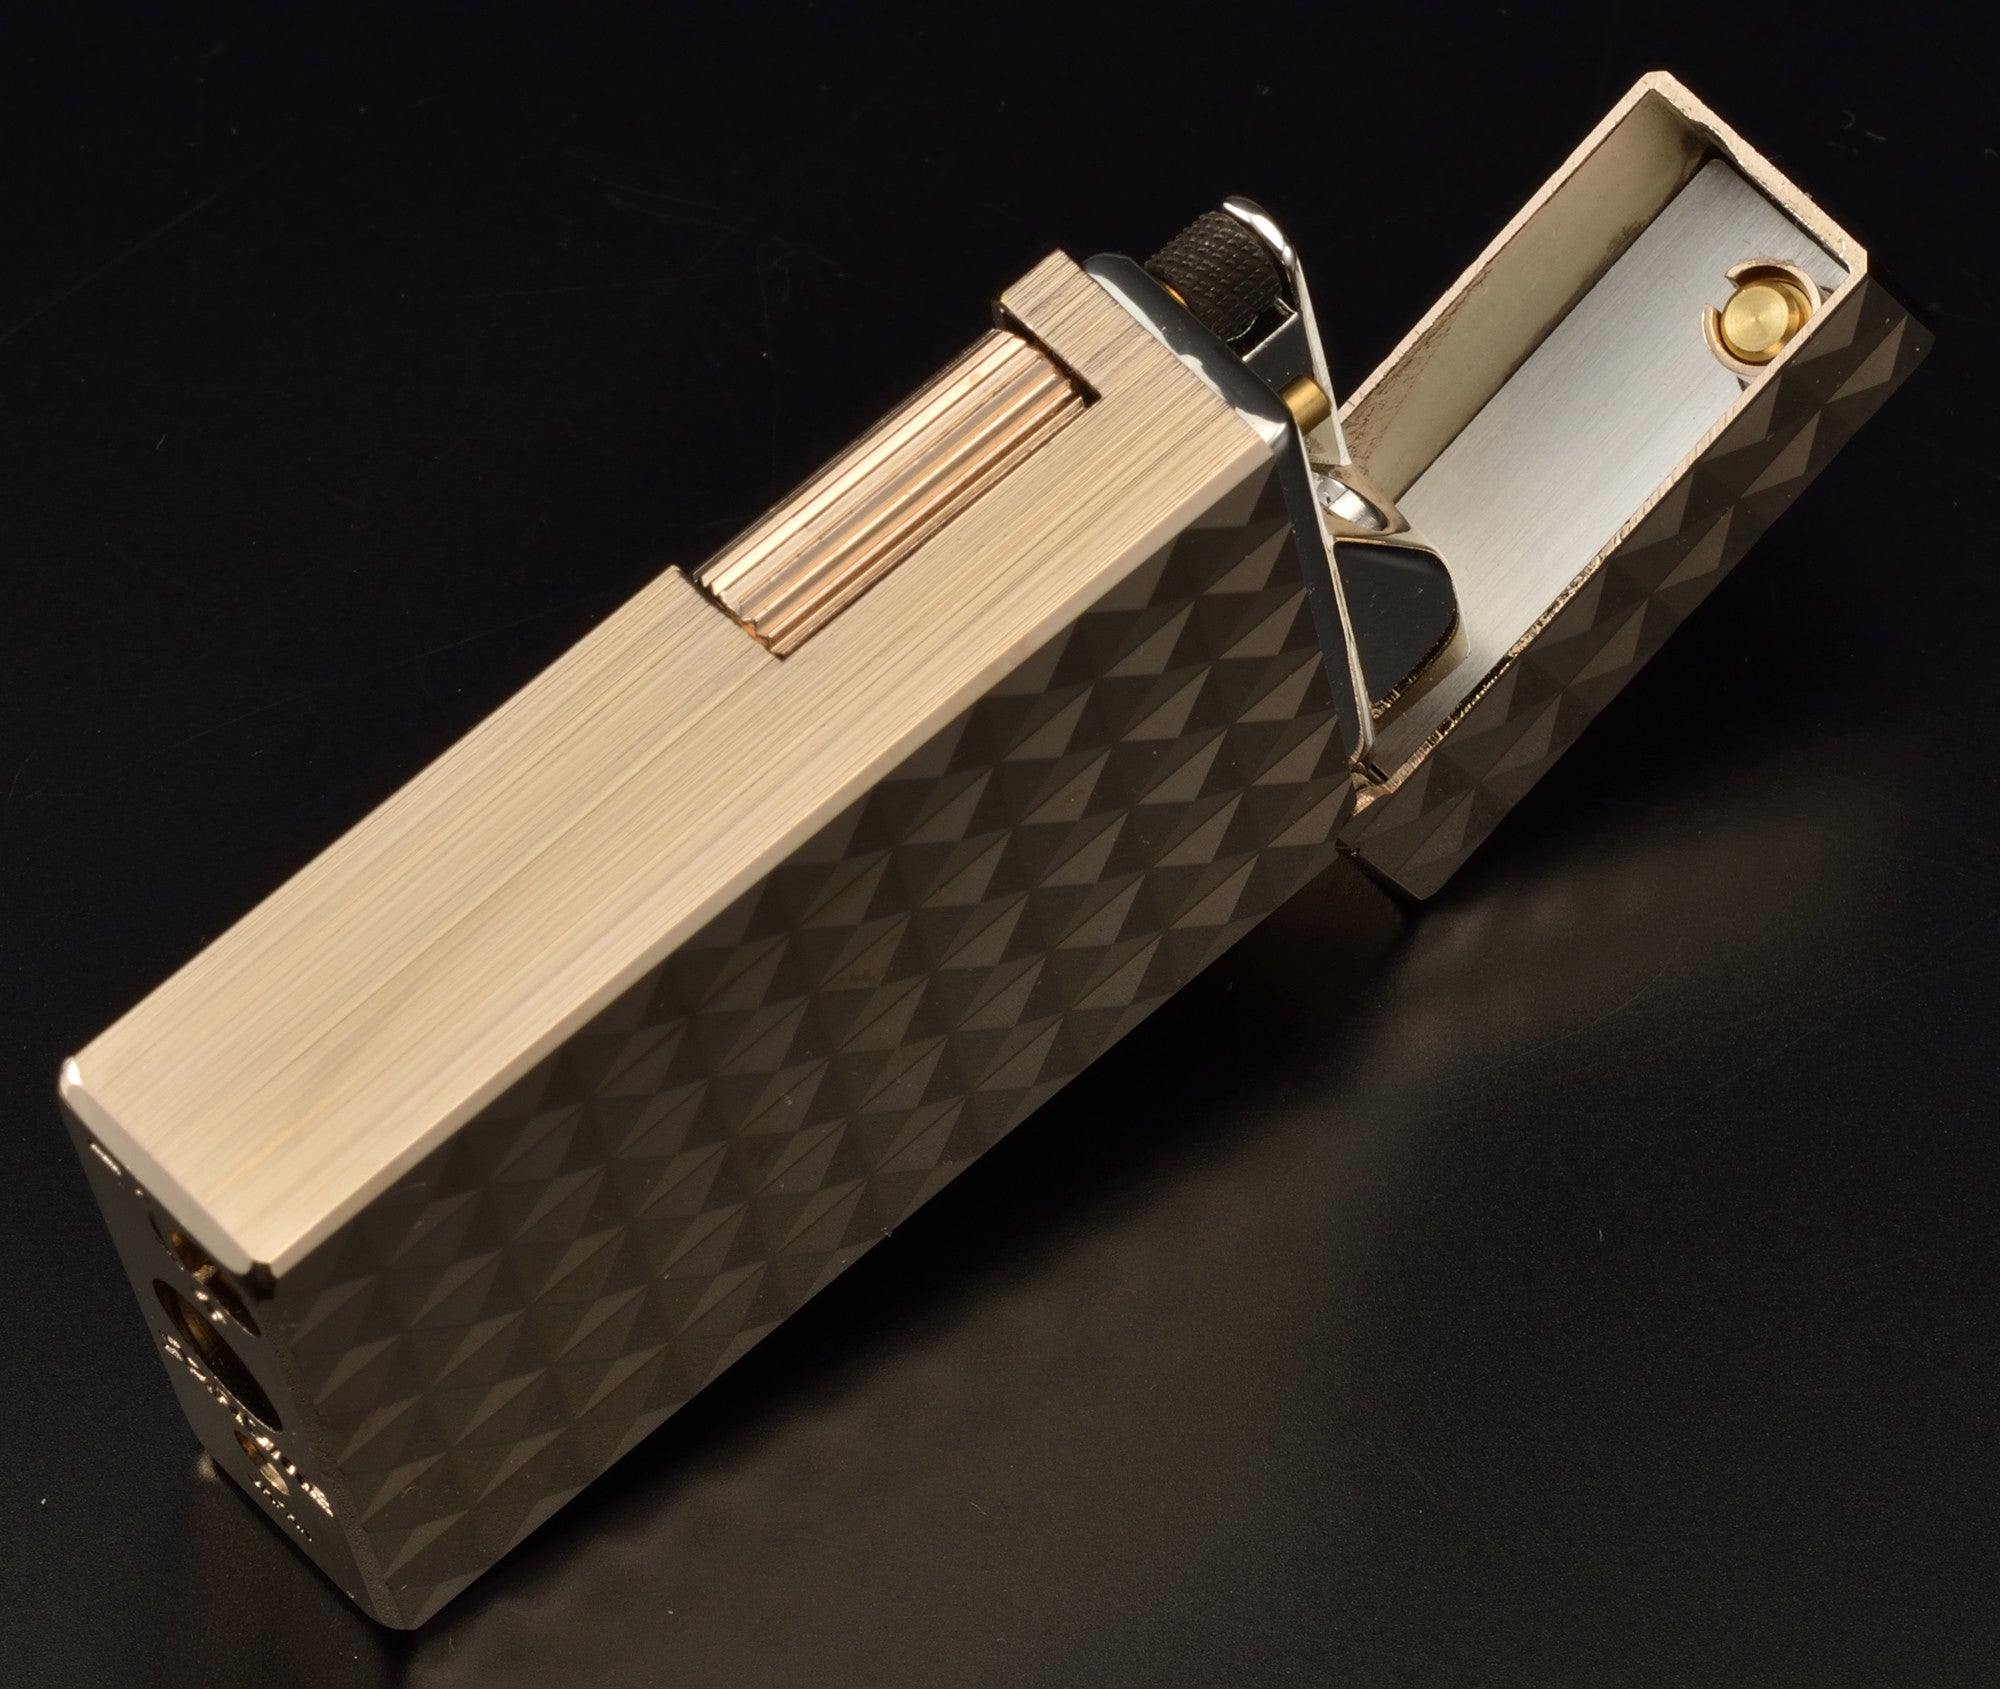 Sarome Flint Cigarette Lighter Antique Silver / 4-side hummer tone SD1-57